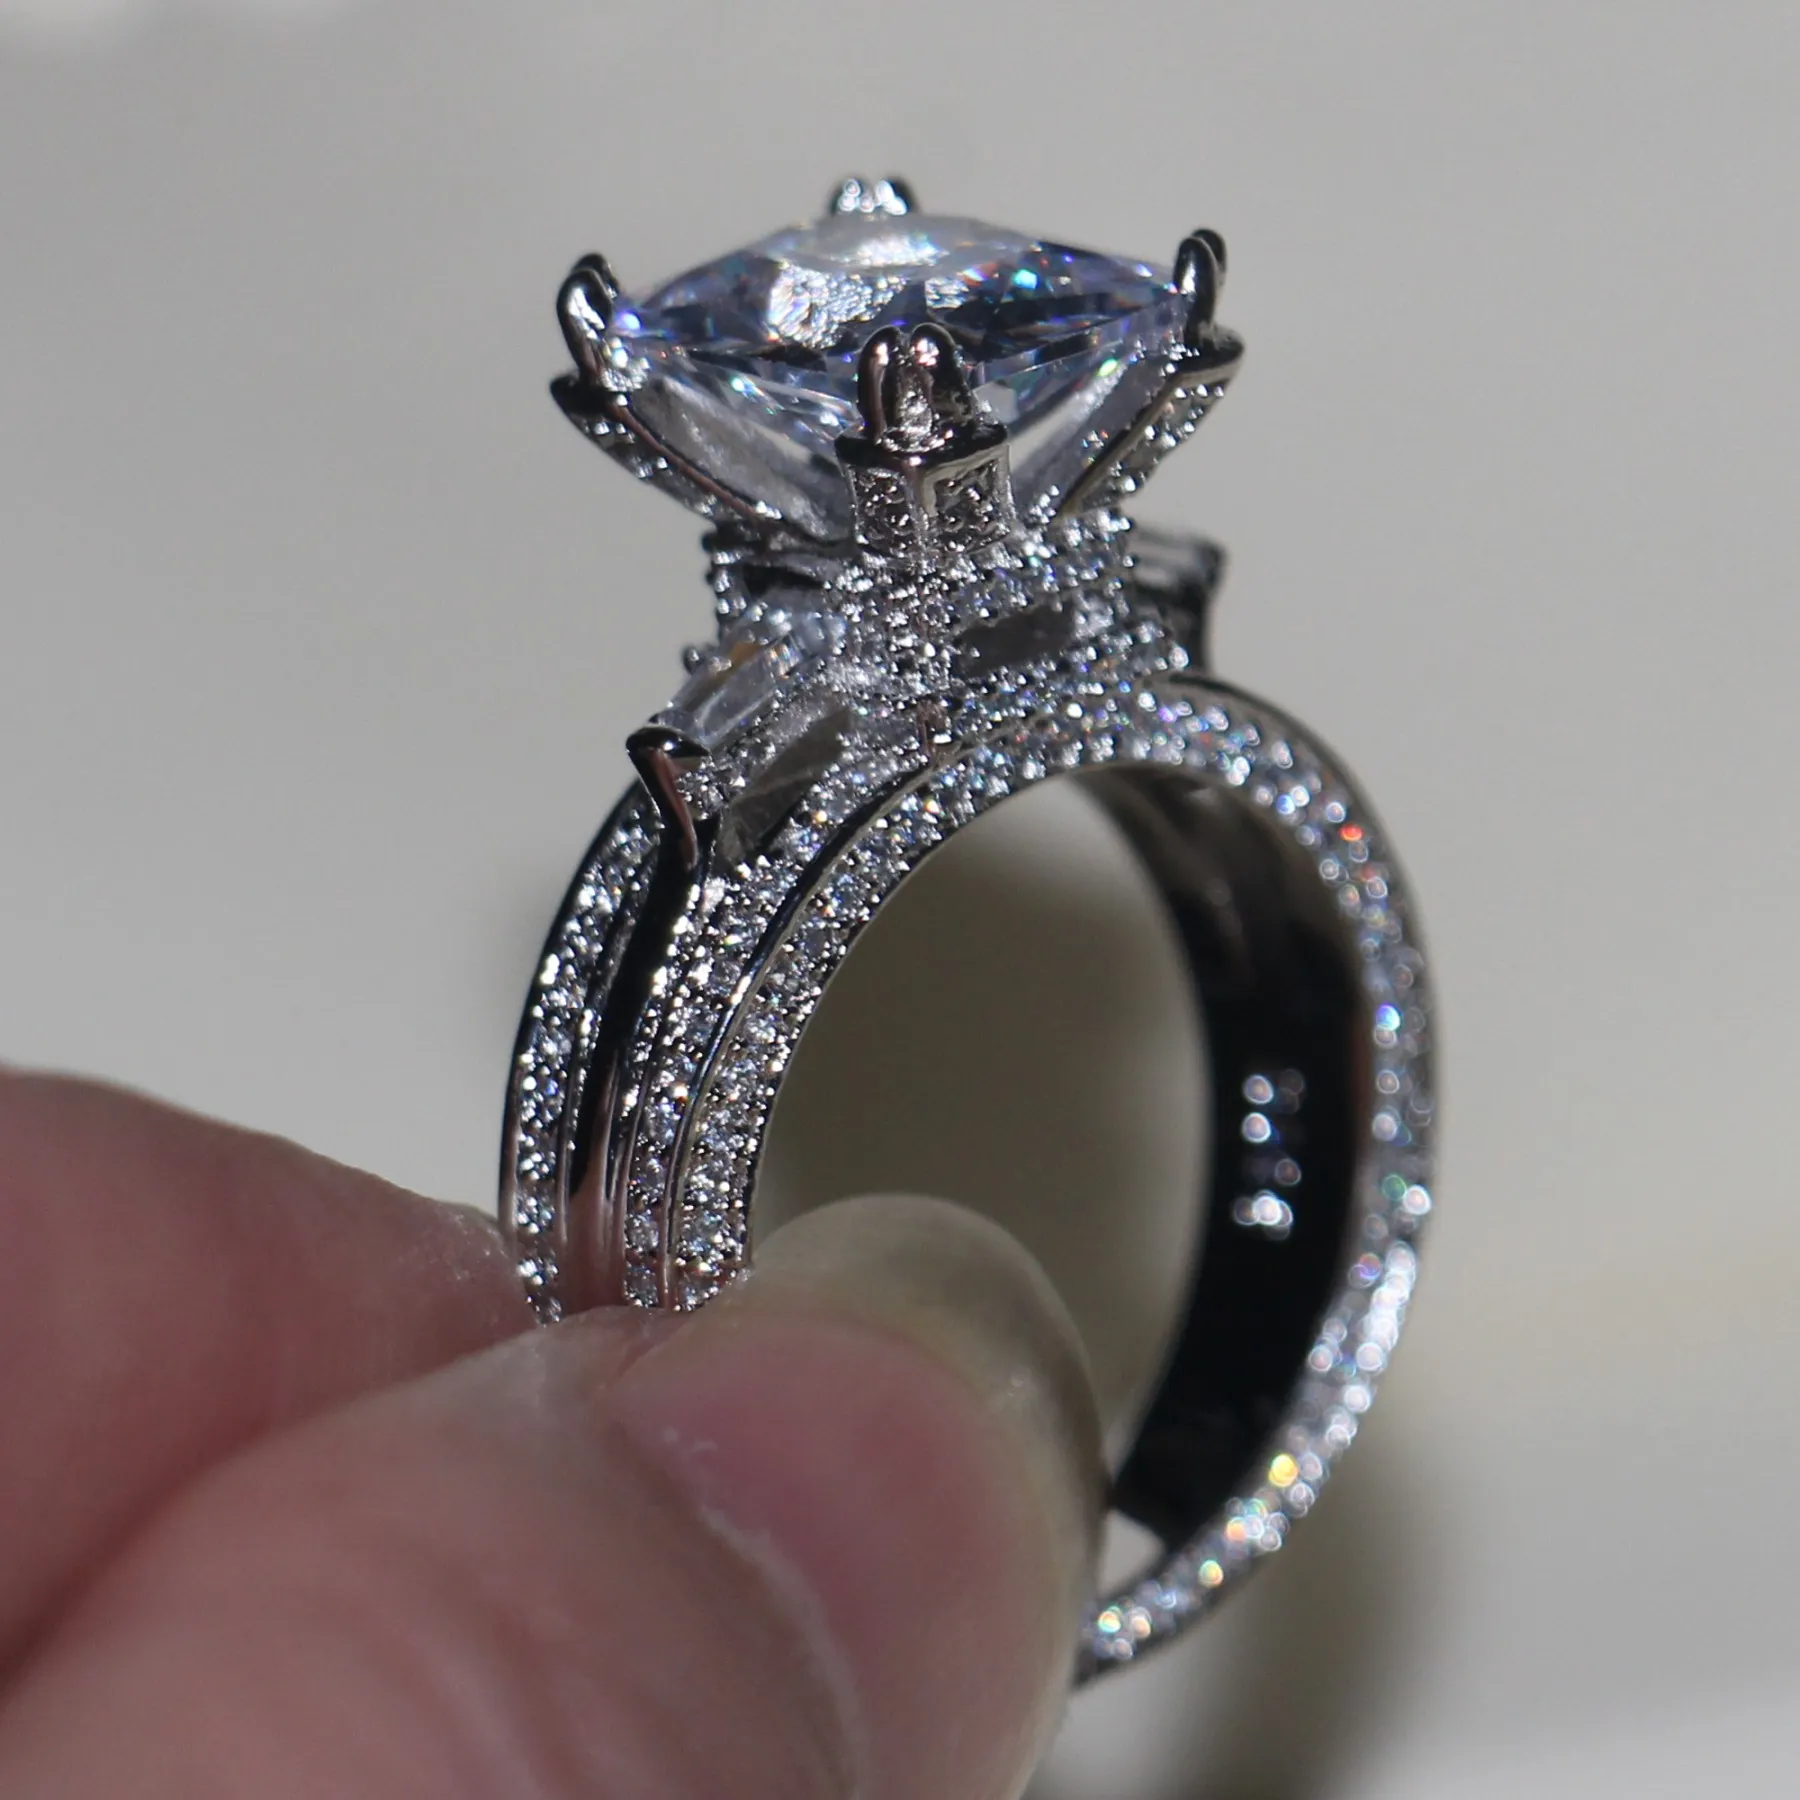 Vecalon Mujeres Big Jewelry Ring Princess Cut 10ct Diamond Stone CZ 925 Sterling Silver Compromiso Anillo de boda Regalo